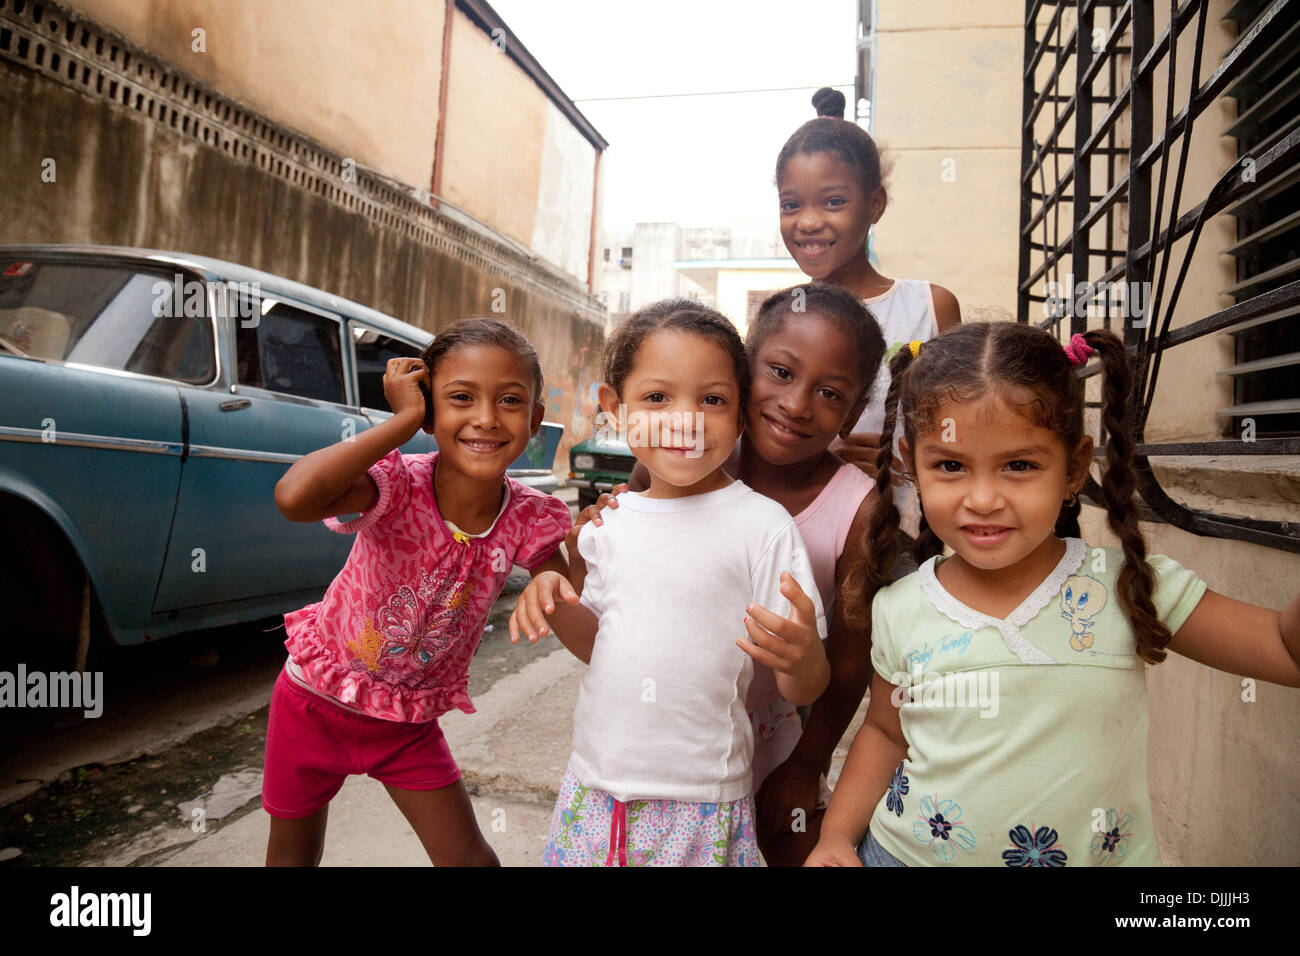 Cuba - Enfants heureux les enfants cubains jouant sur la rue dans un quartier pauvre de la vieille Havane, Cuba Caraïbes, Amérique Latine Banque D'Images